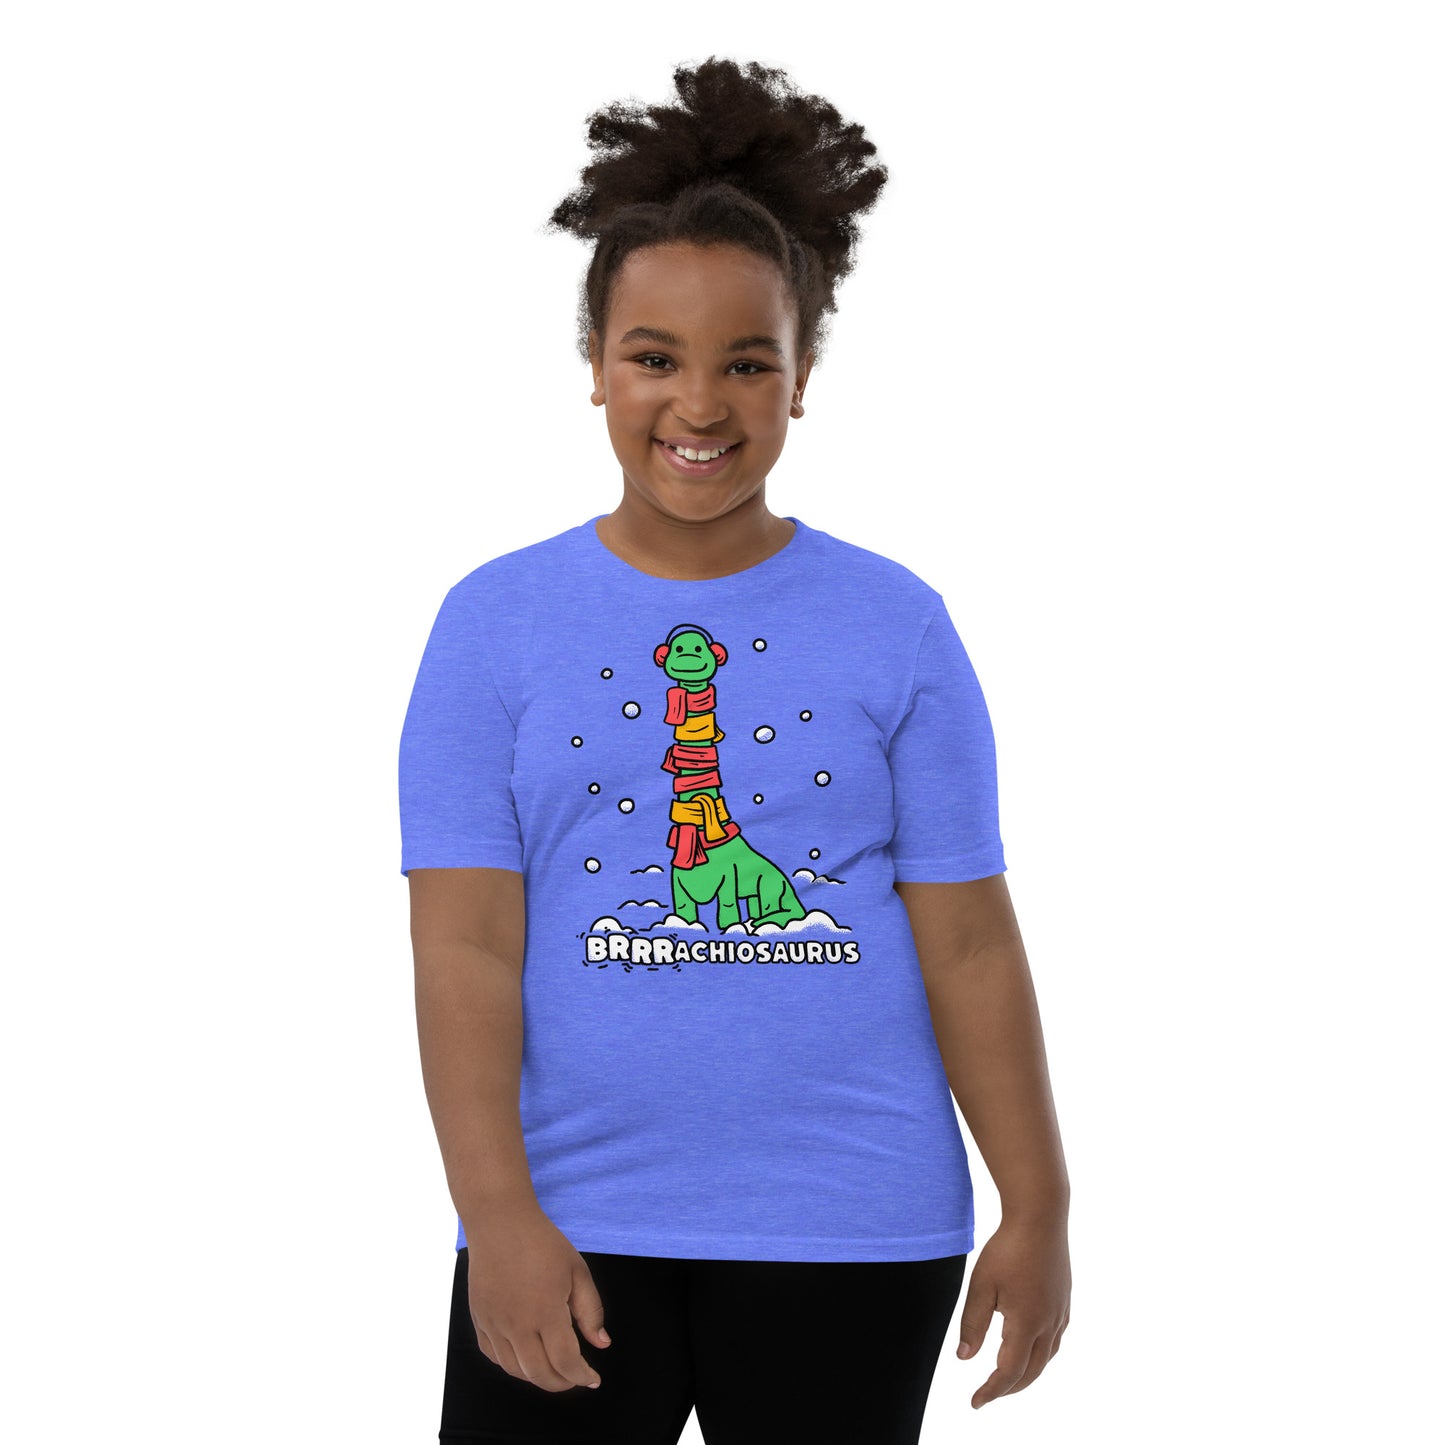 Cute Dino Brrrachiosaurus T-Shirt for Dinosaur Lovers